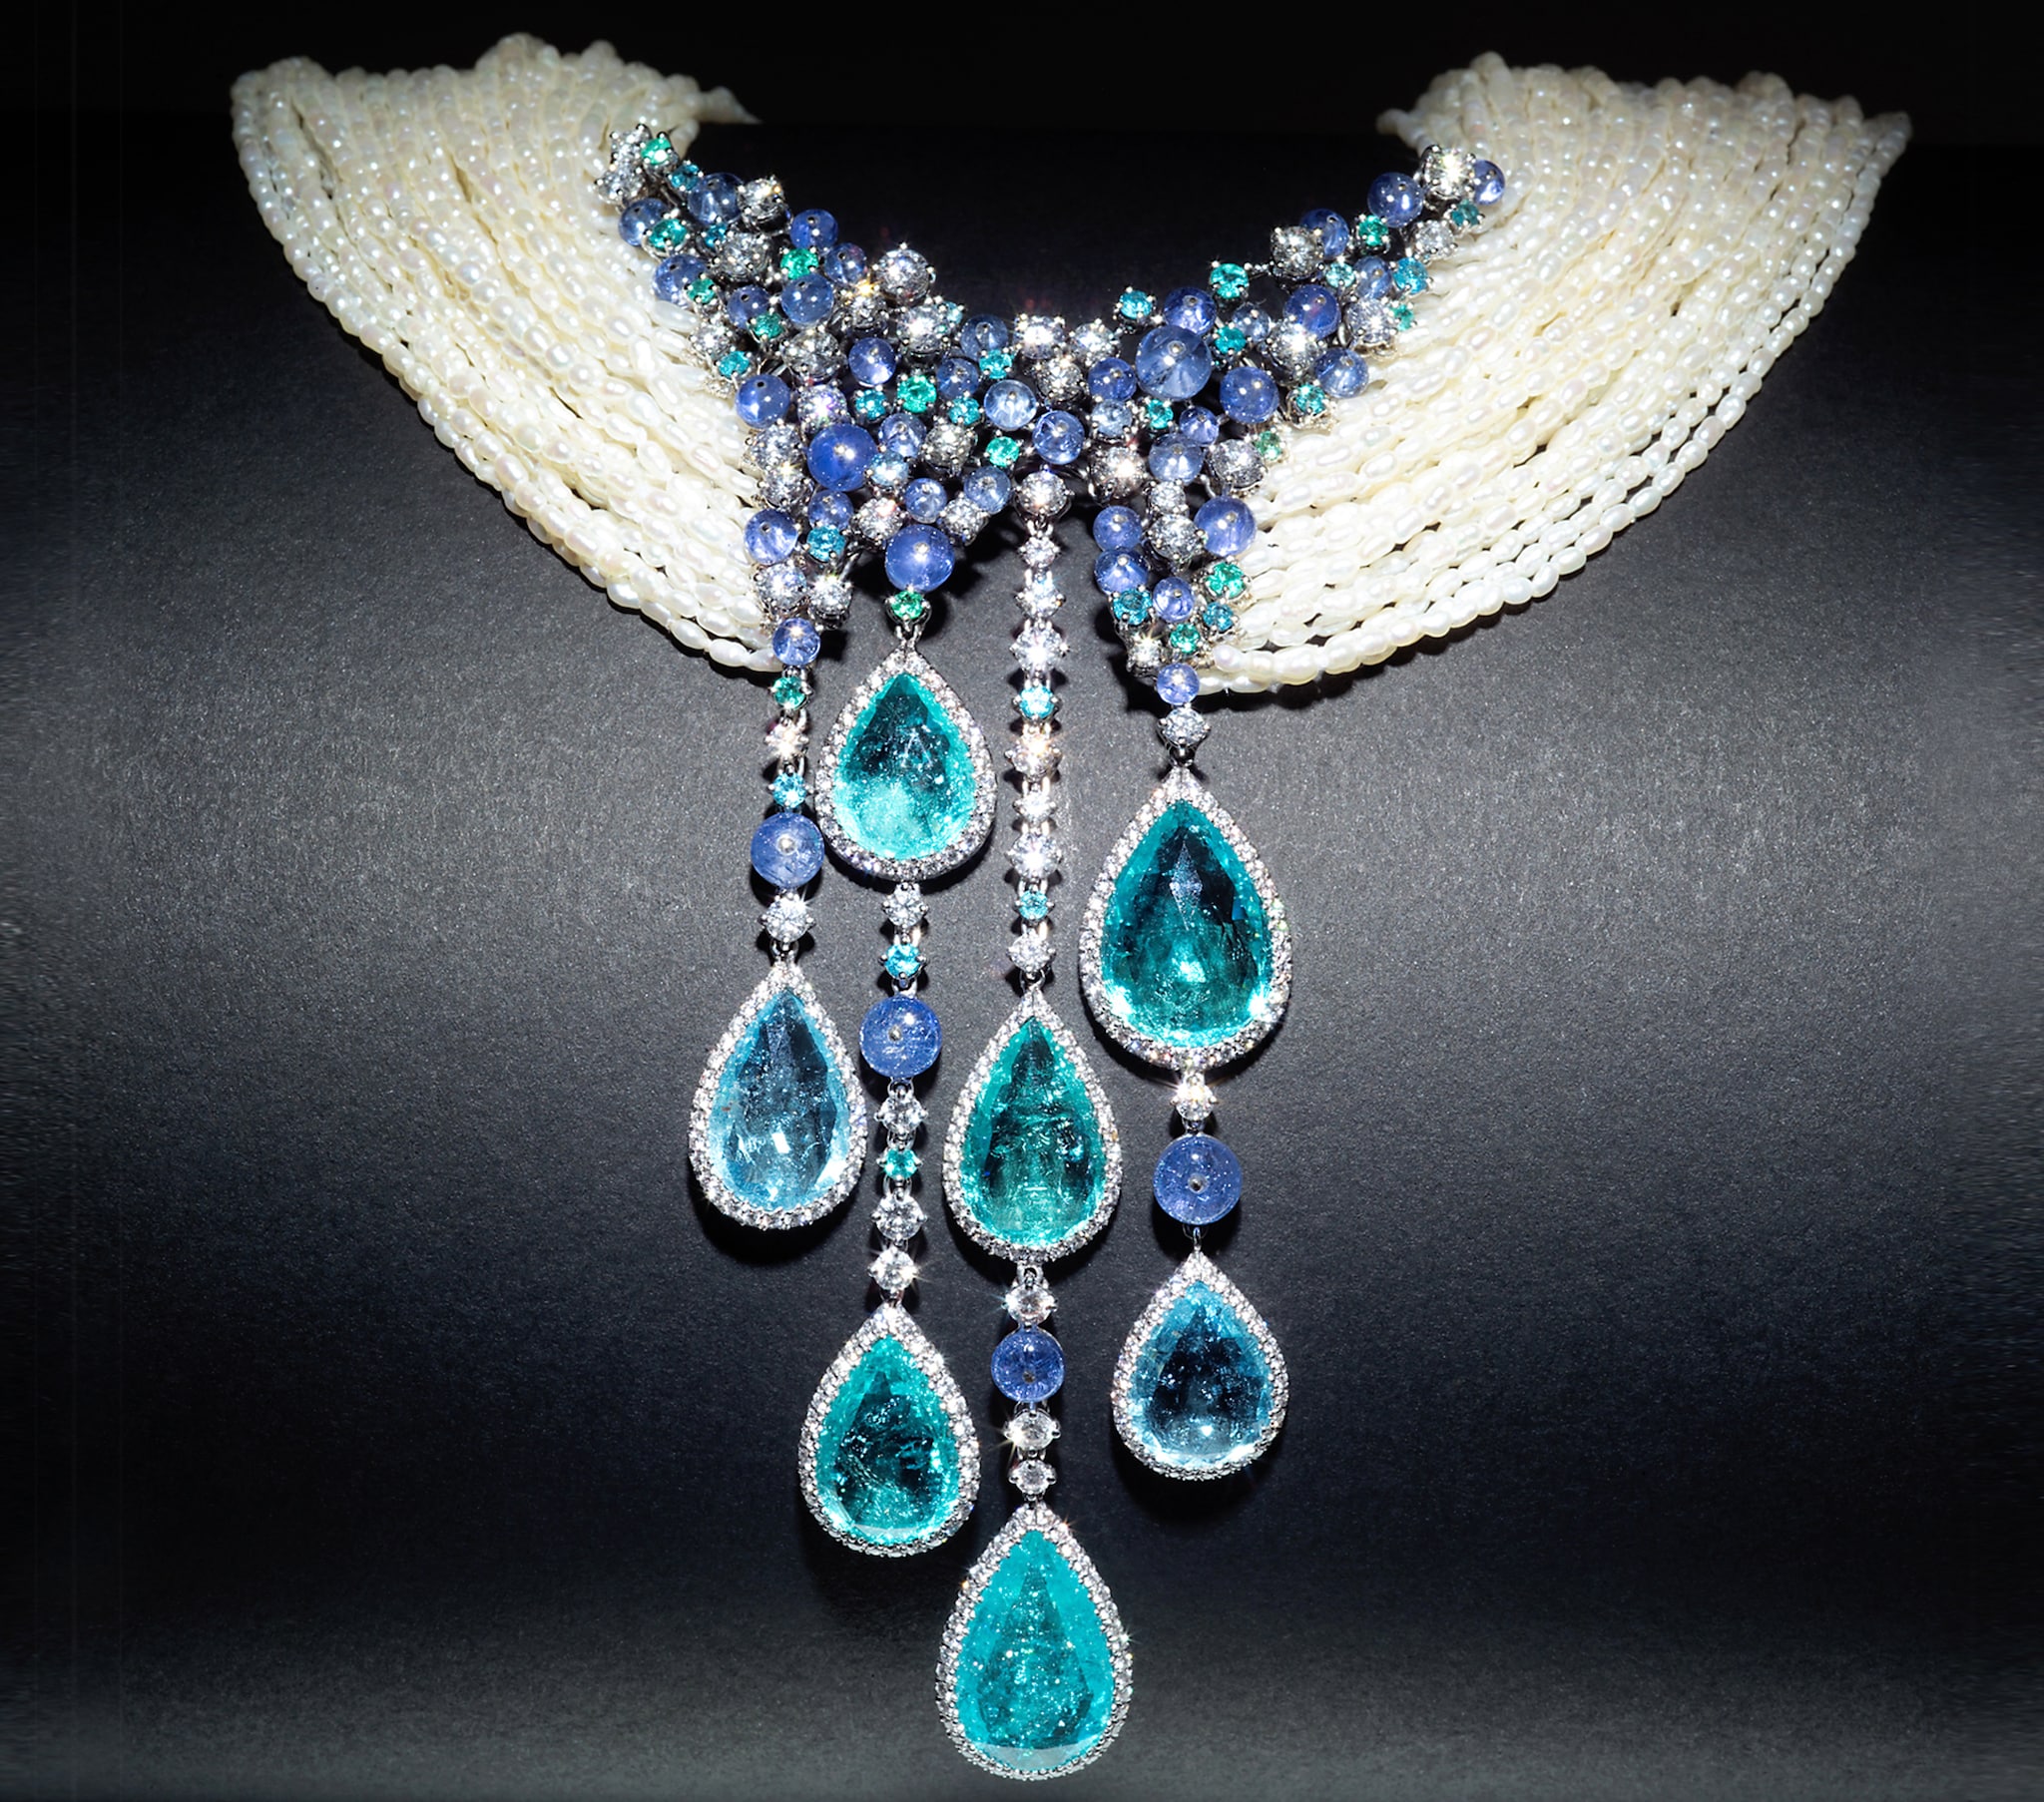 Collier Brunilde pezzo unico, in micro perle multifilo con una cascata di tormaline Paraiba, zaffiri birmani e brillanti, SCAVIA.